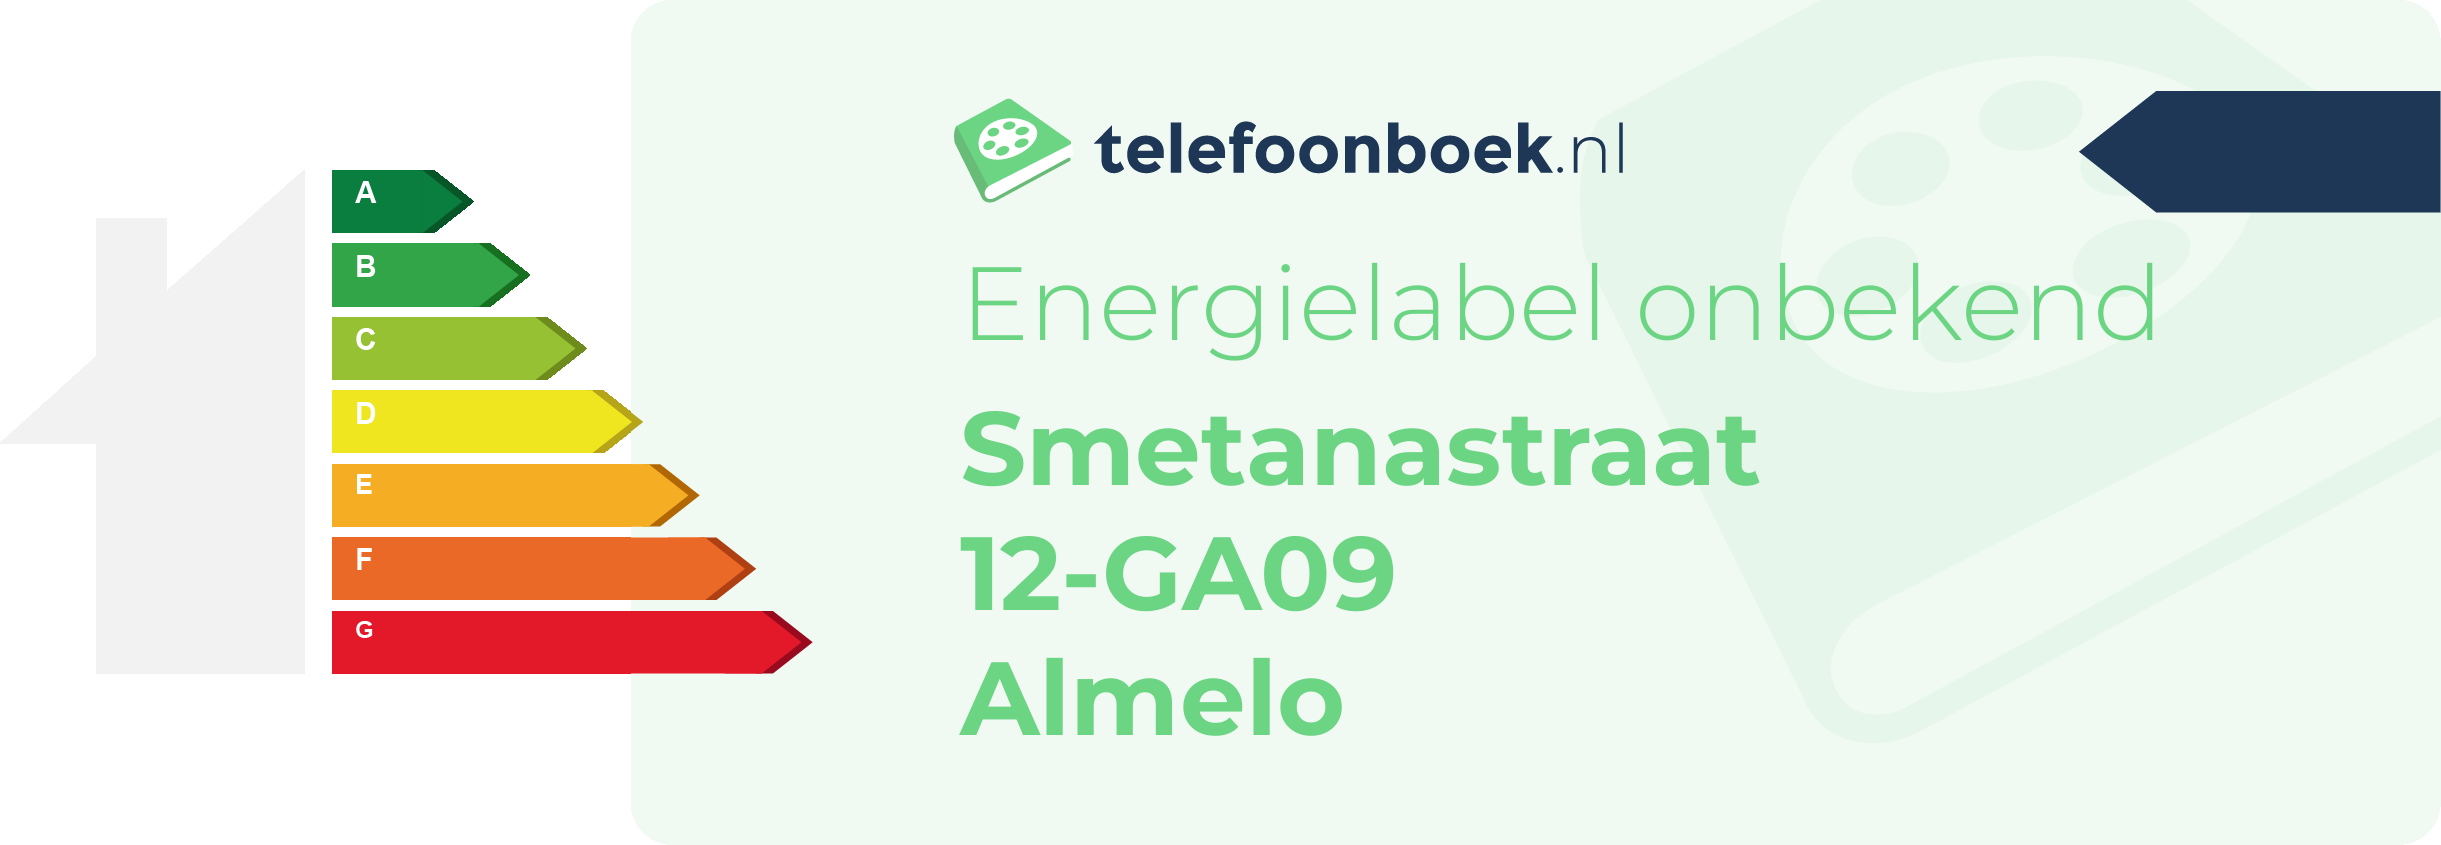 Energielabel Smetanastraat 12-GA09 Almelo